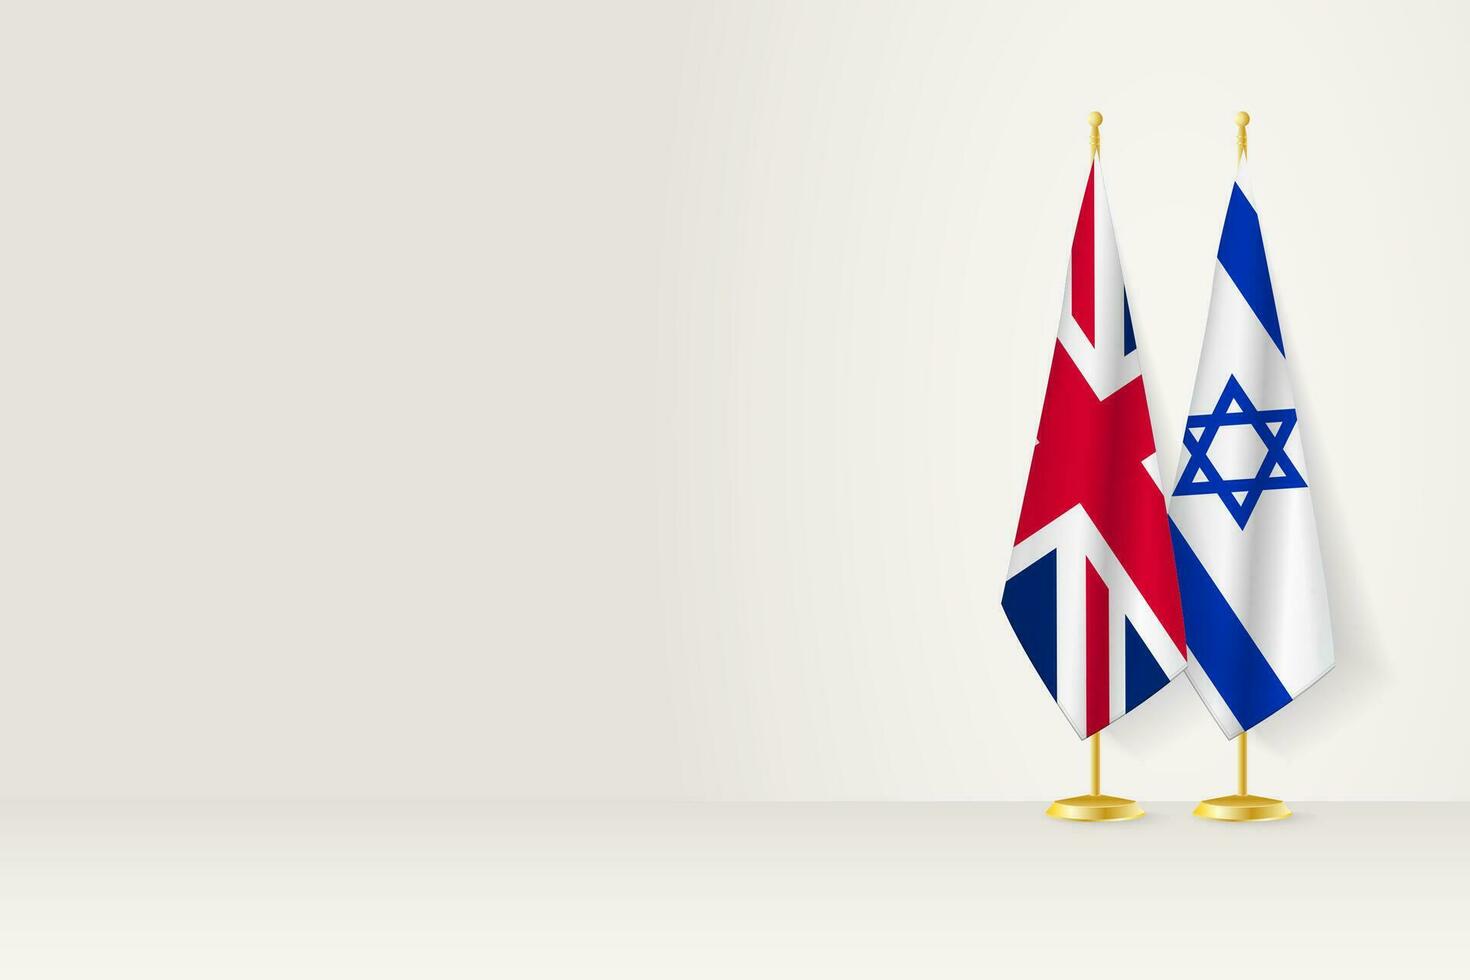 banderas de unido Reino y Israel en bandera pararse, reunión Entre dos países. vector